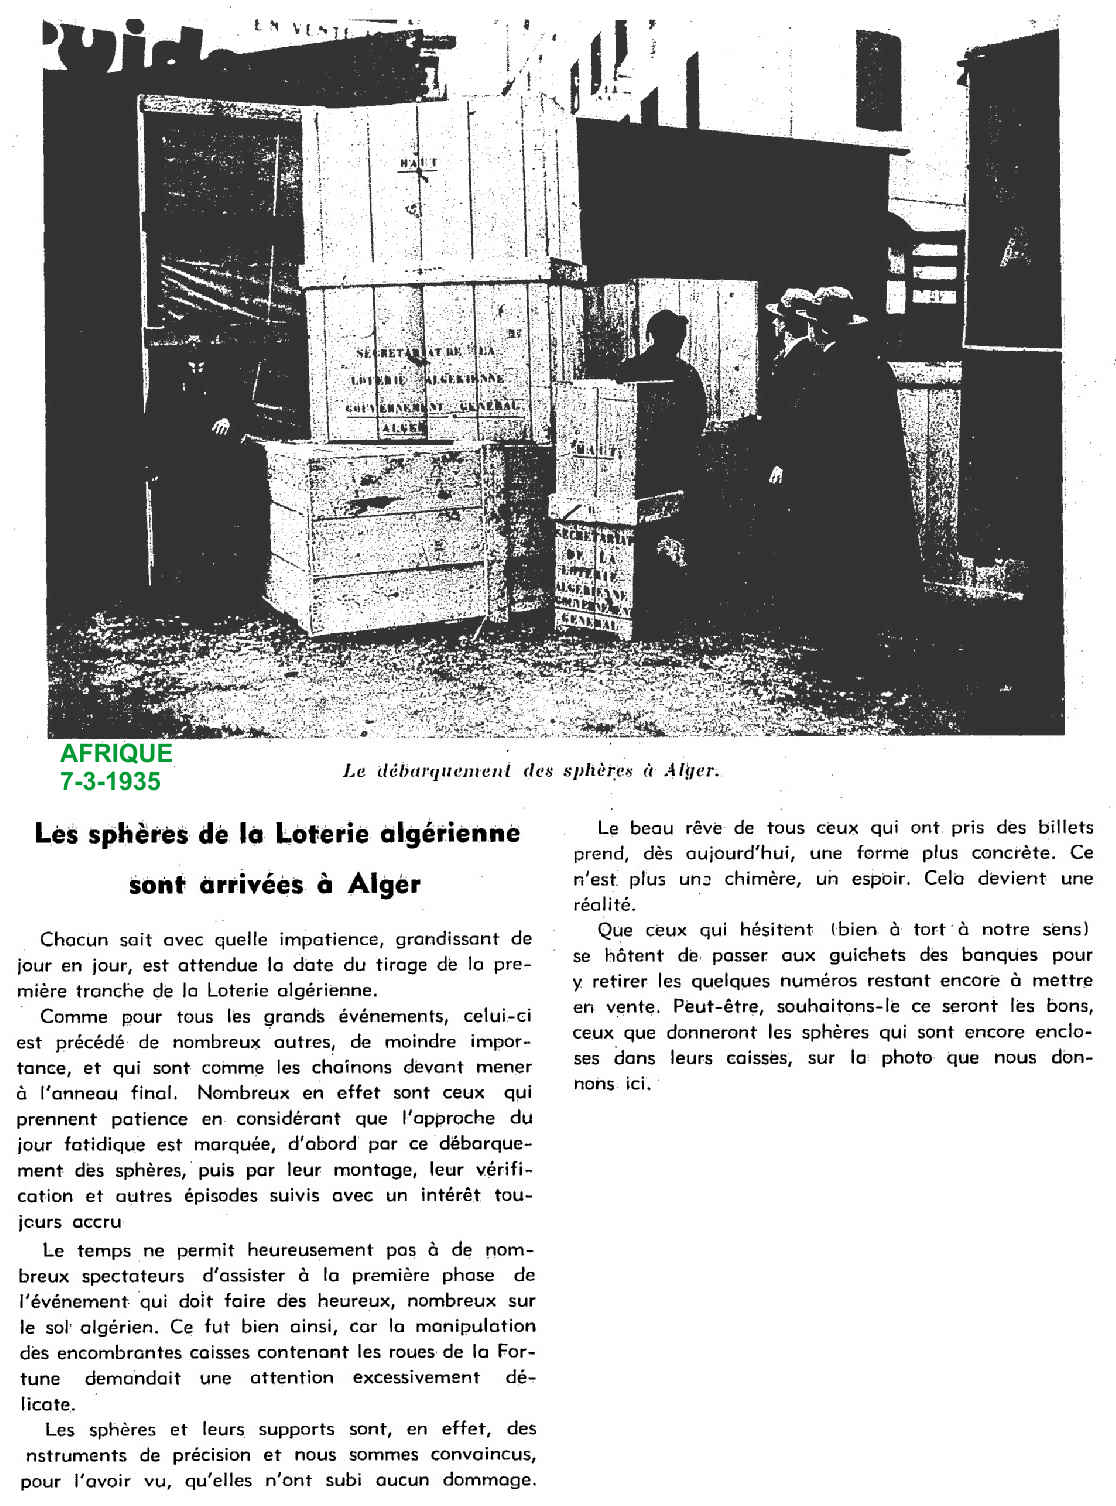 Les sphères de la Loterie algérienne sont arrivées à Alger 